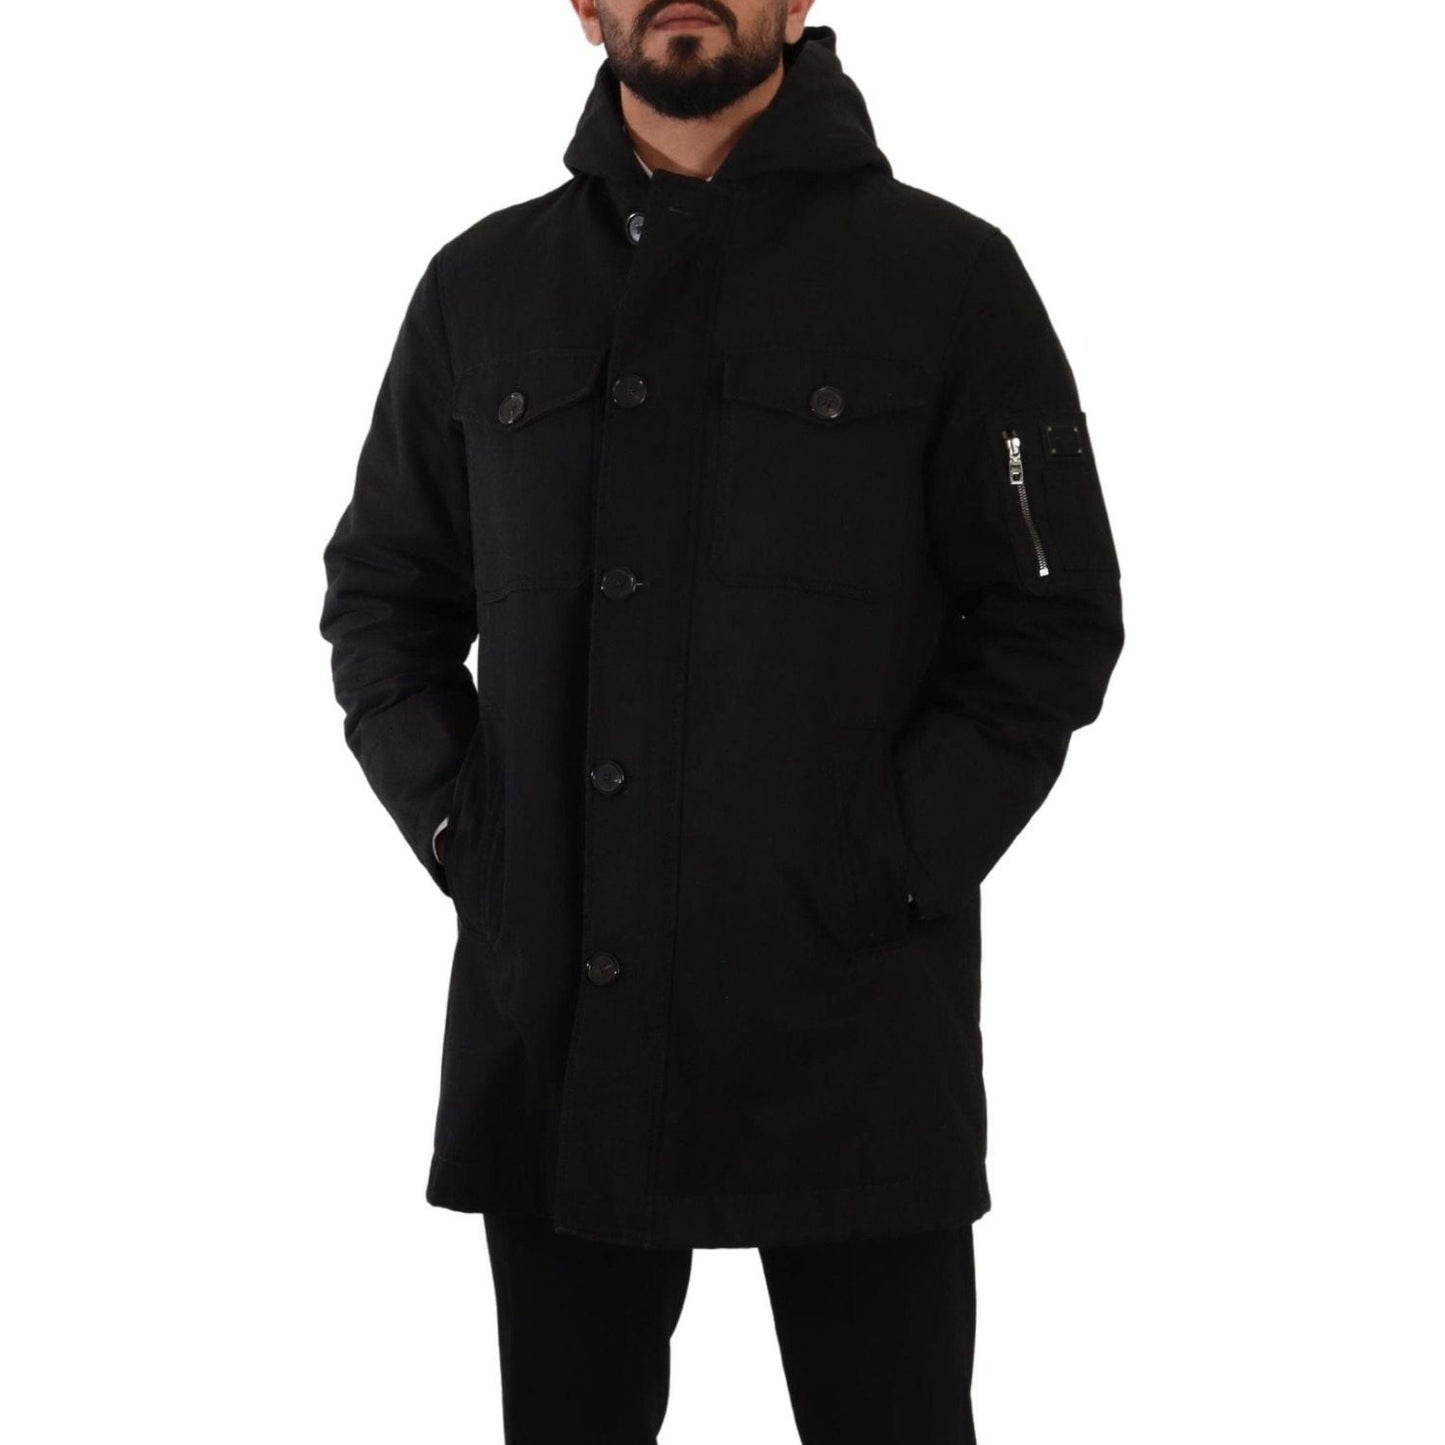 Dolce & Gabbana Elegant Black Parka Hooded Jacket black-denim-hooded-parka-coat-winter-jacket